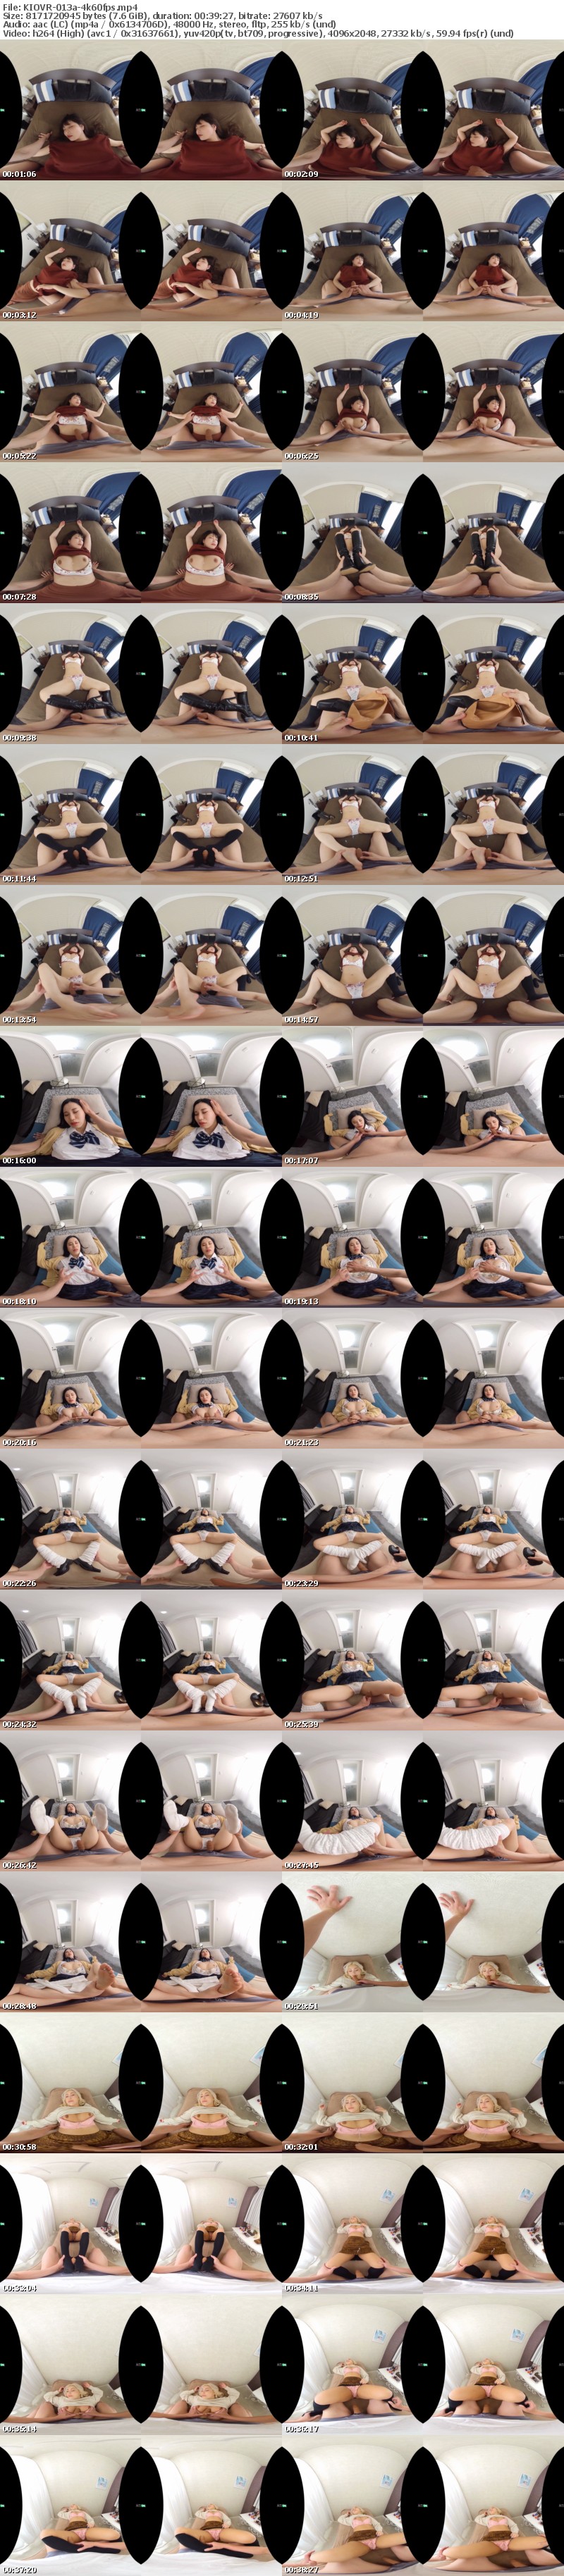 [VR] KIOVR-013 【VR】【昏○ぶっかけ特化VR】 意識の無い女にイタズラしてぶっかけまくる快感 14人完全撮りおろし